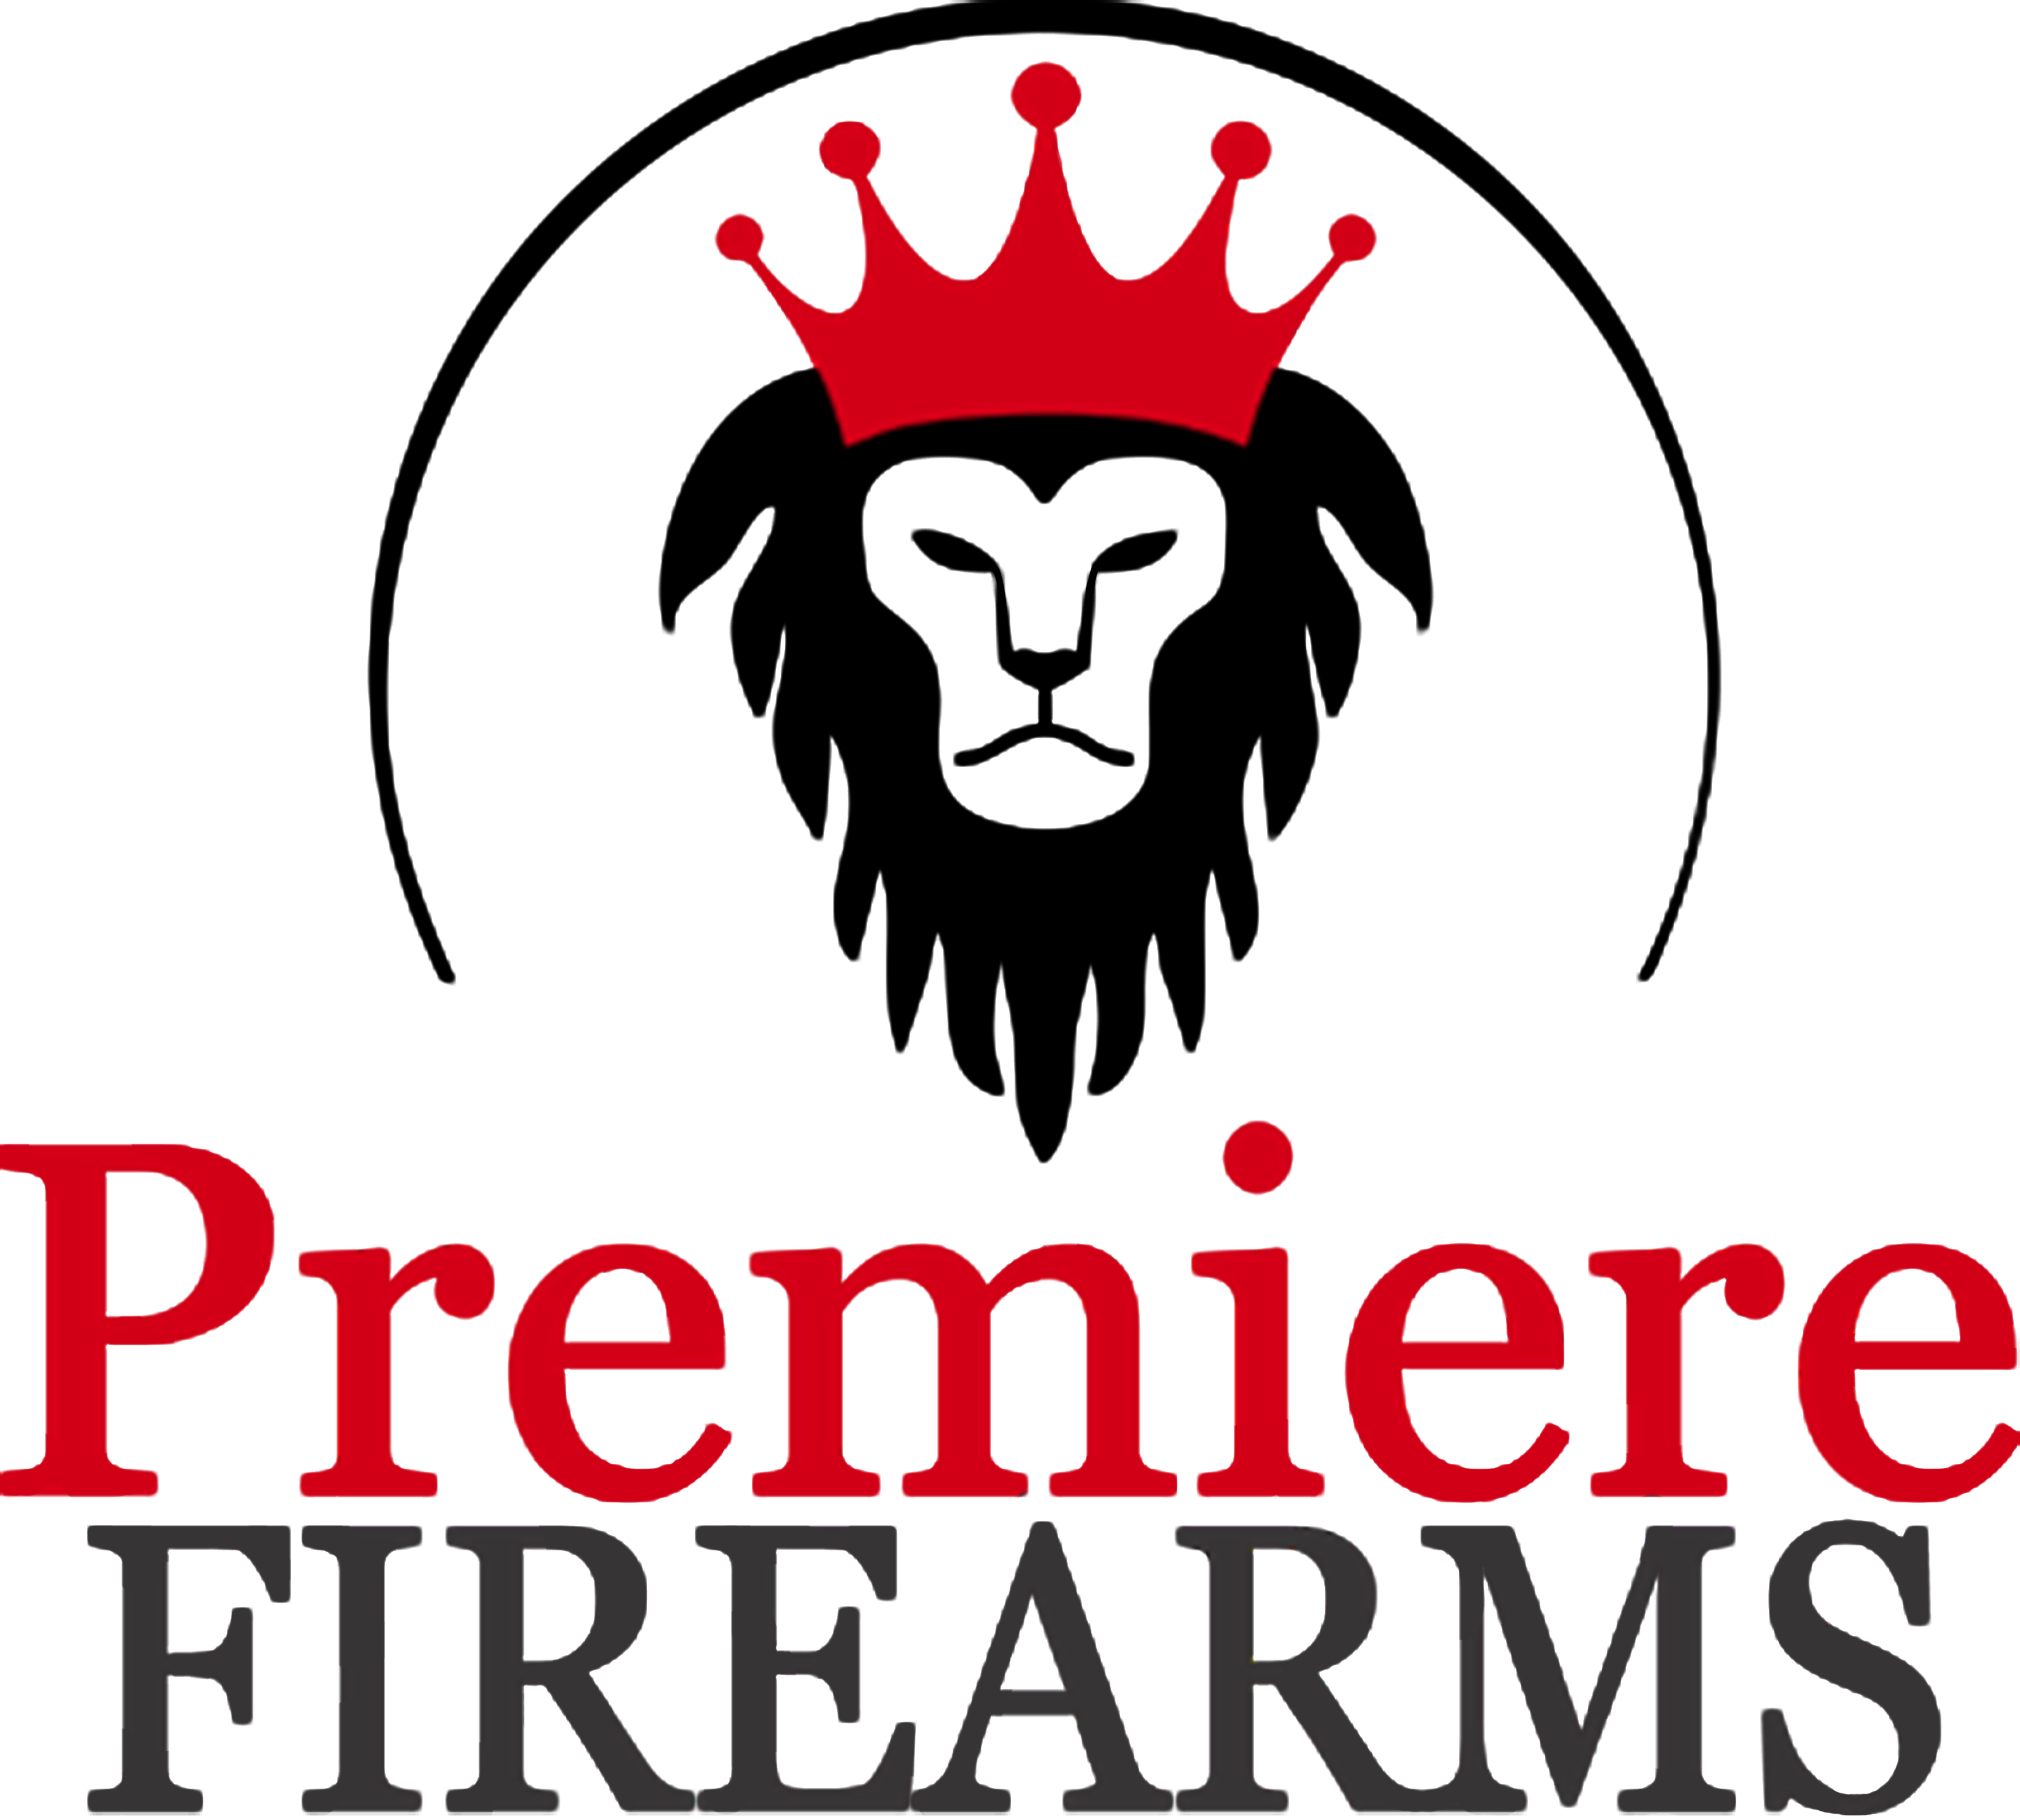 Premiere Firearms